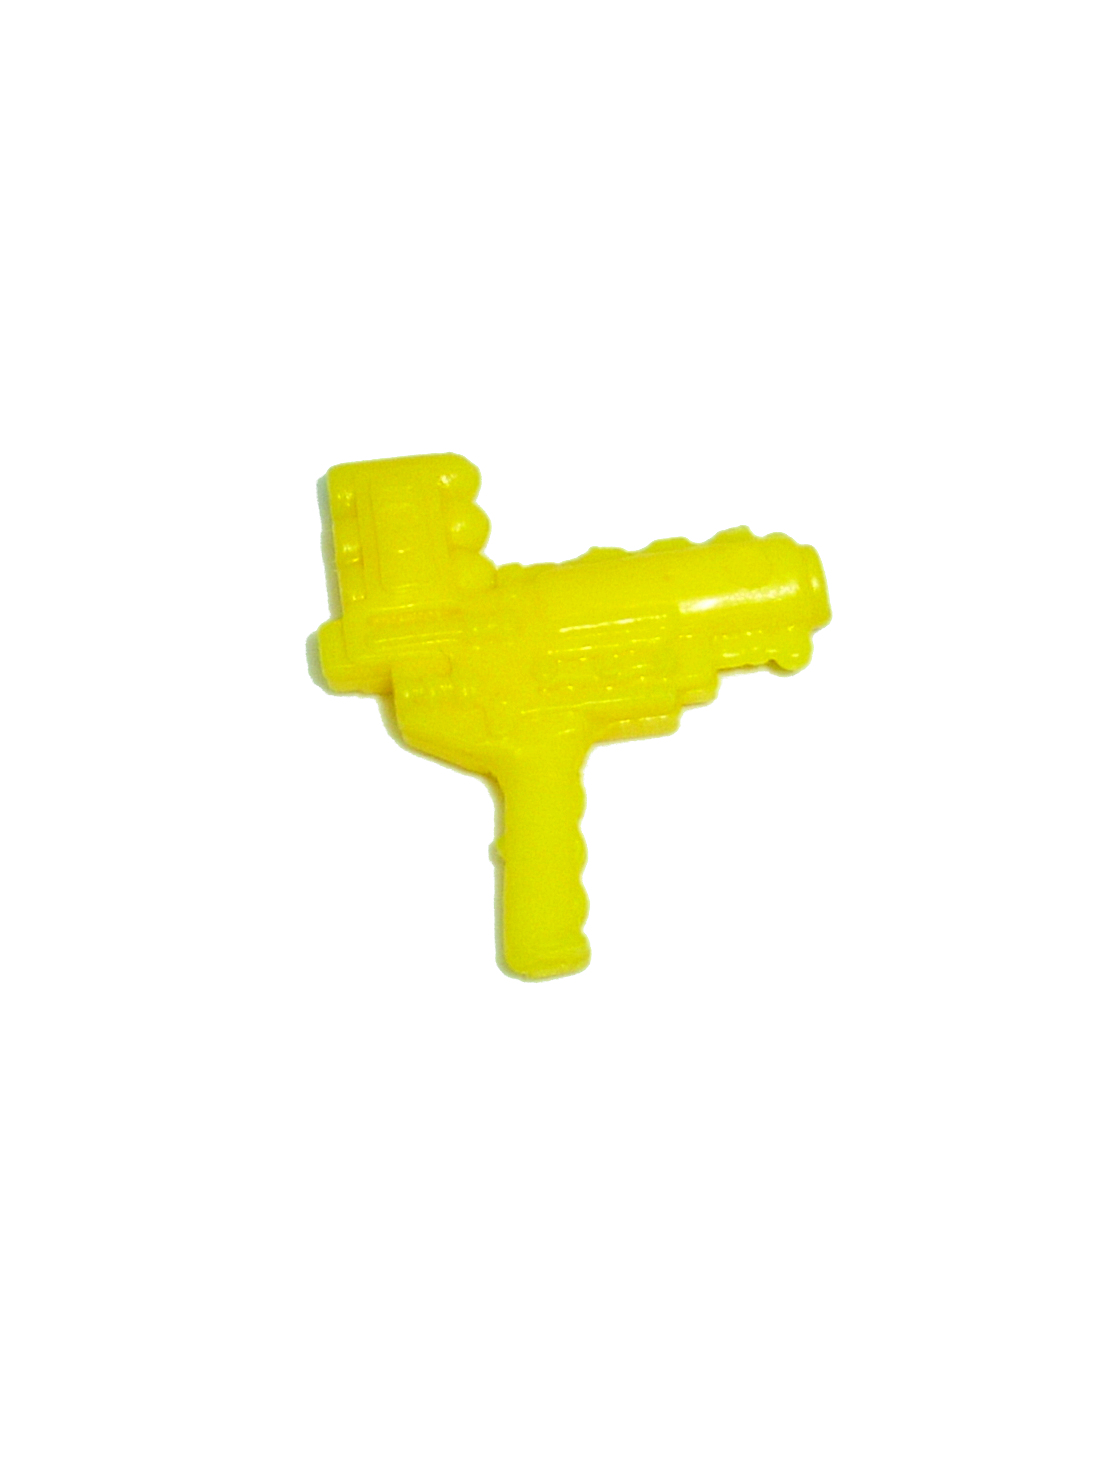 Yellow Gun v4 Hasbro